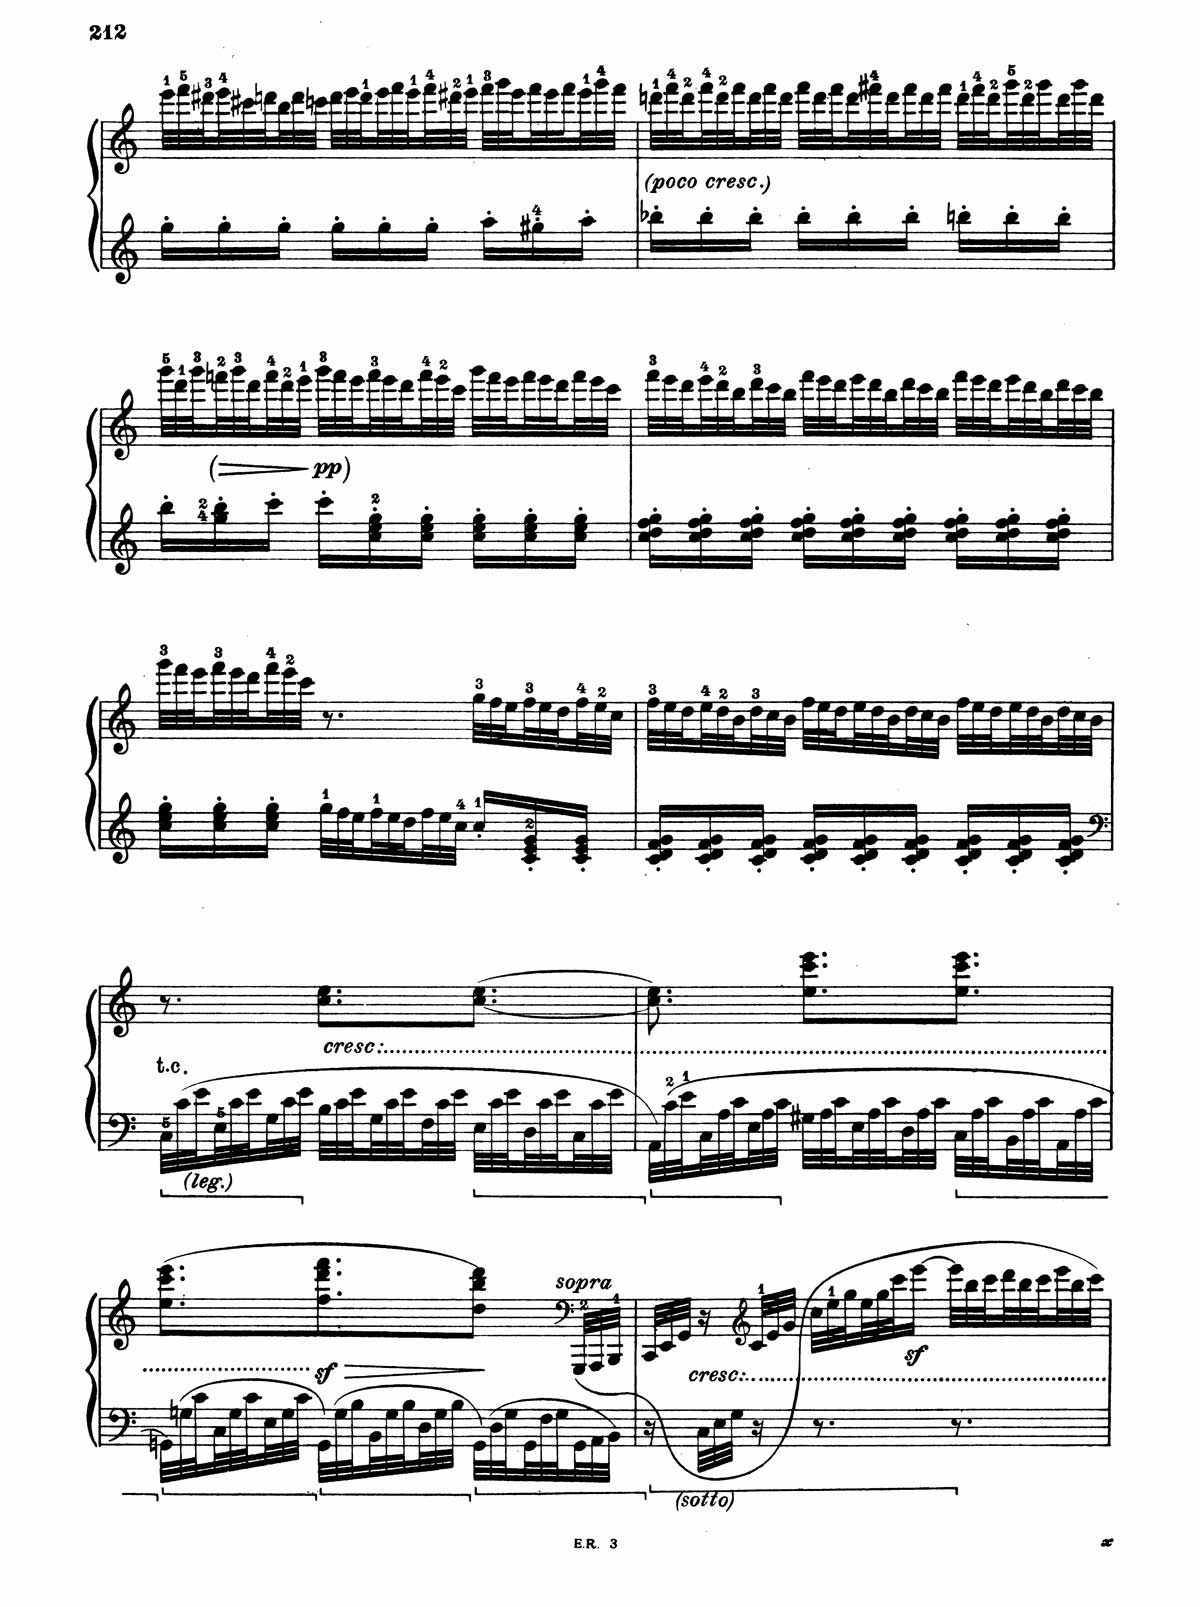 Beethoven Piano Sonata 32-20 sheet music